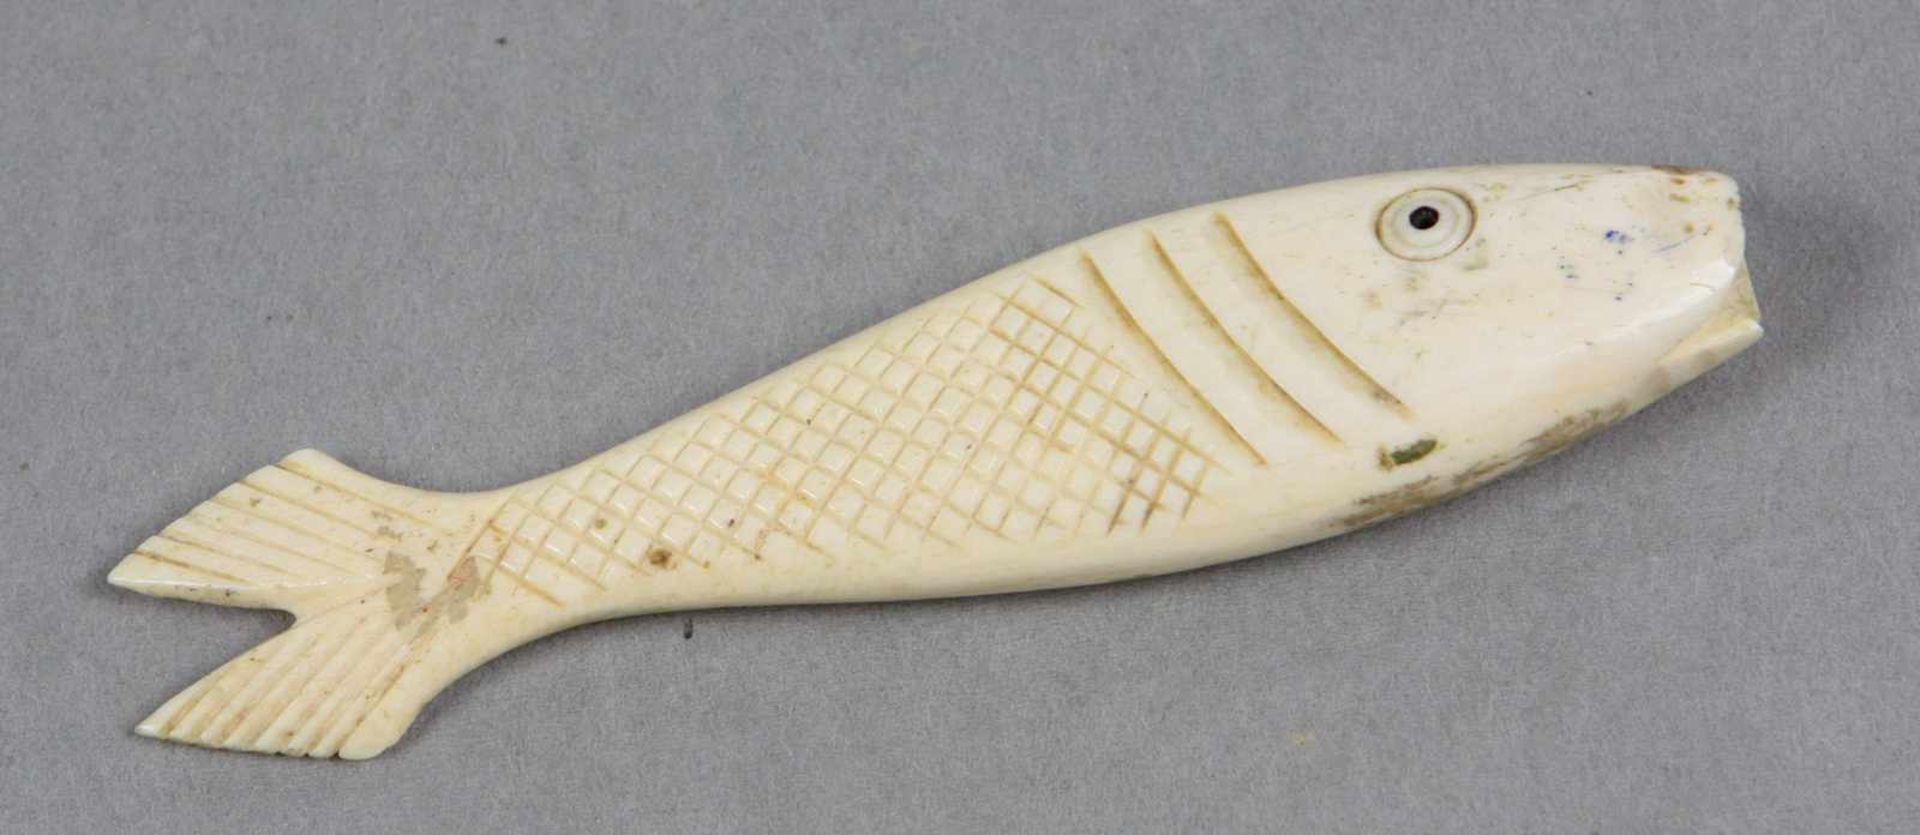 Fisch Netsukevon Hand beschnitztes Elfenbein, in Form eines Fisches ausgeführt, L ca. 10 cm, kleiner